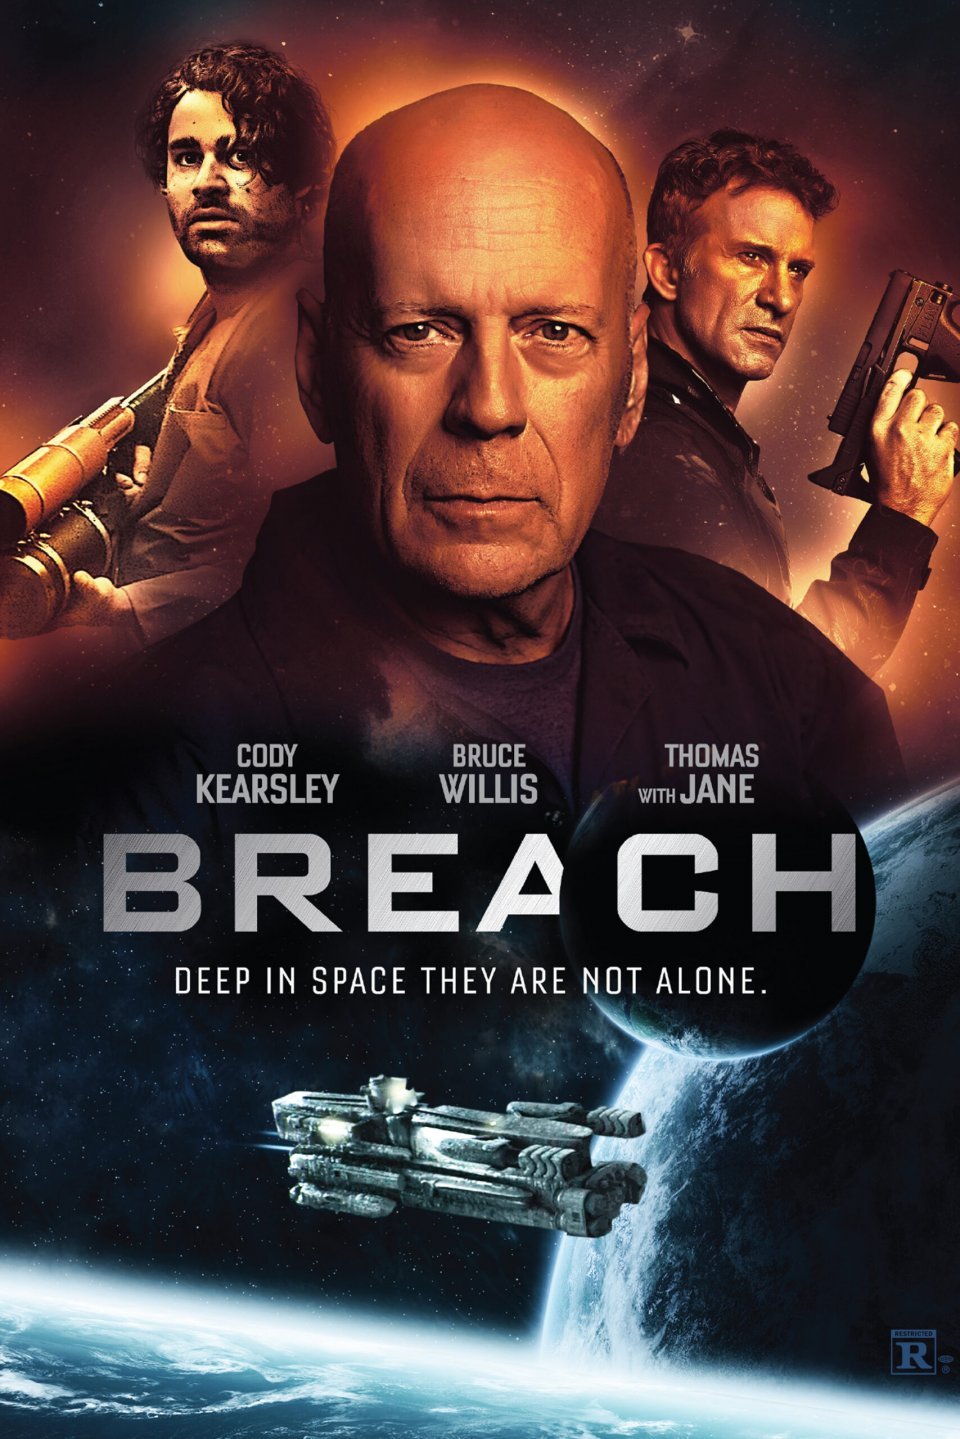 Breach Movie Poster